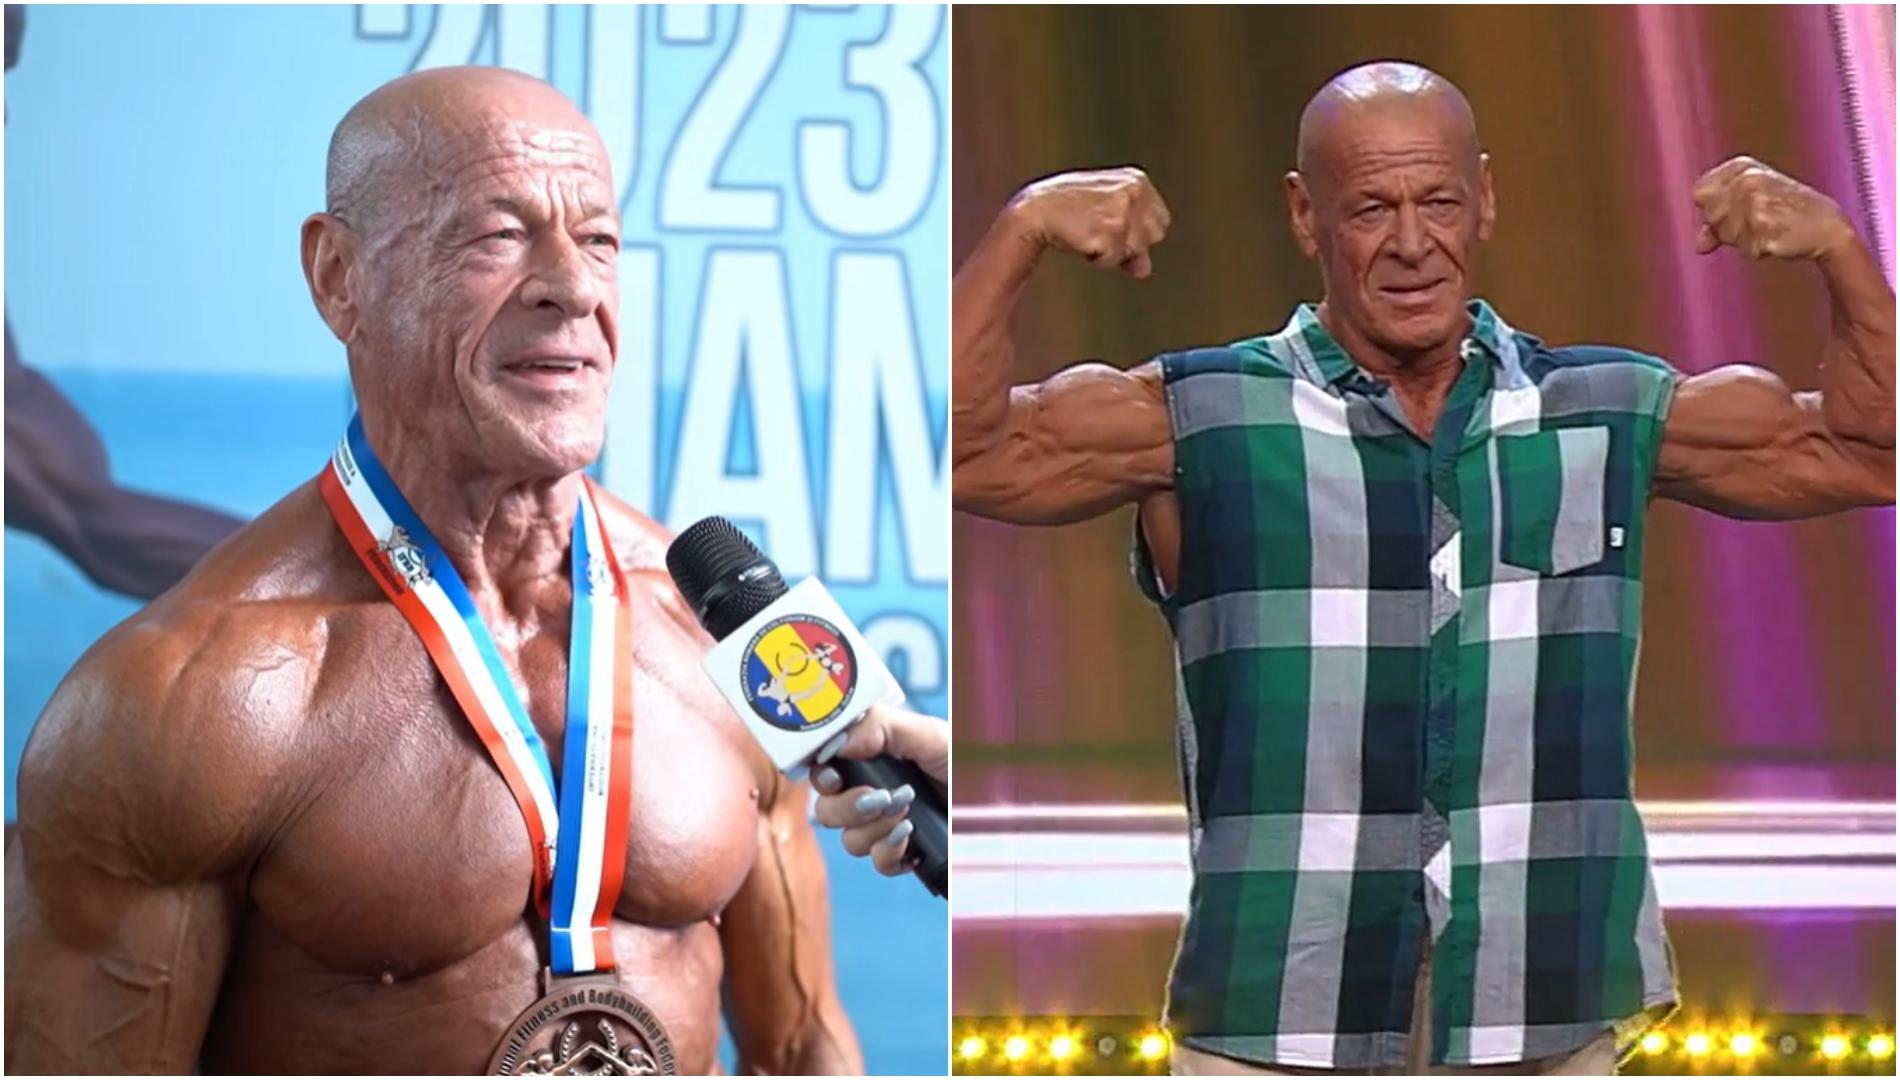 La 73 de ani, Vasile Șerban a urcat pe podium la Campionatul Mondial de Culturism. Ce mesaj a transmis pensionarul culturist